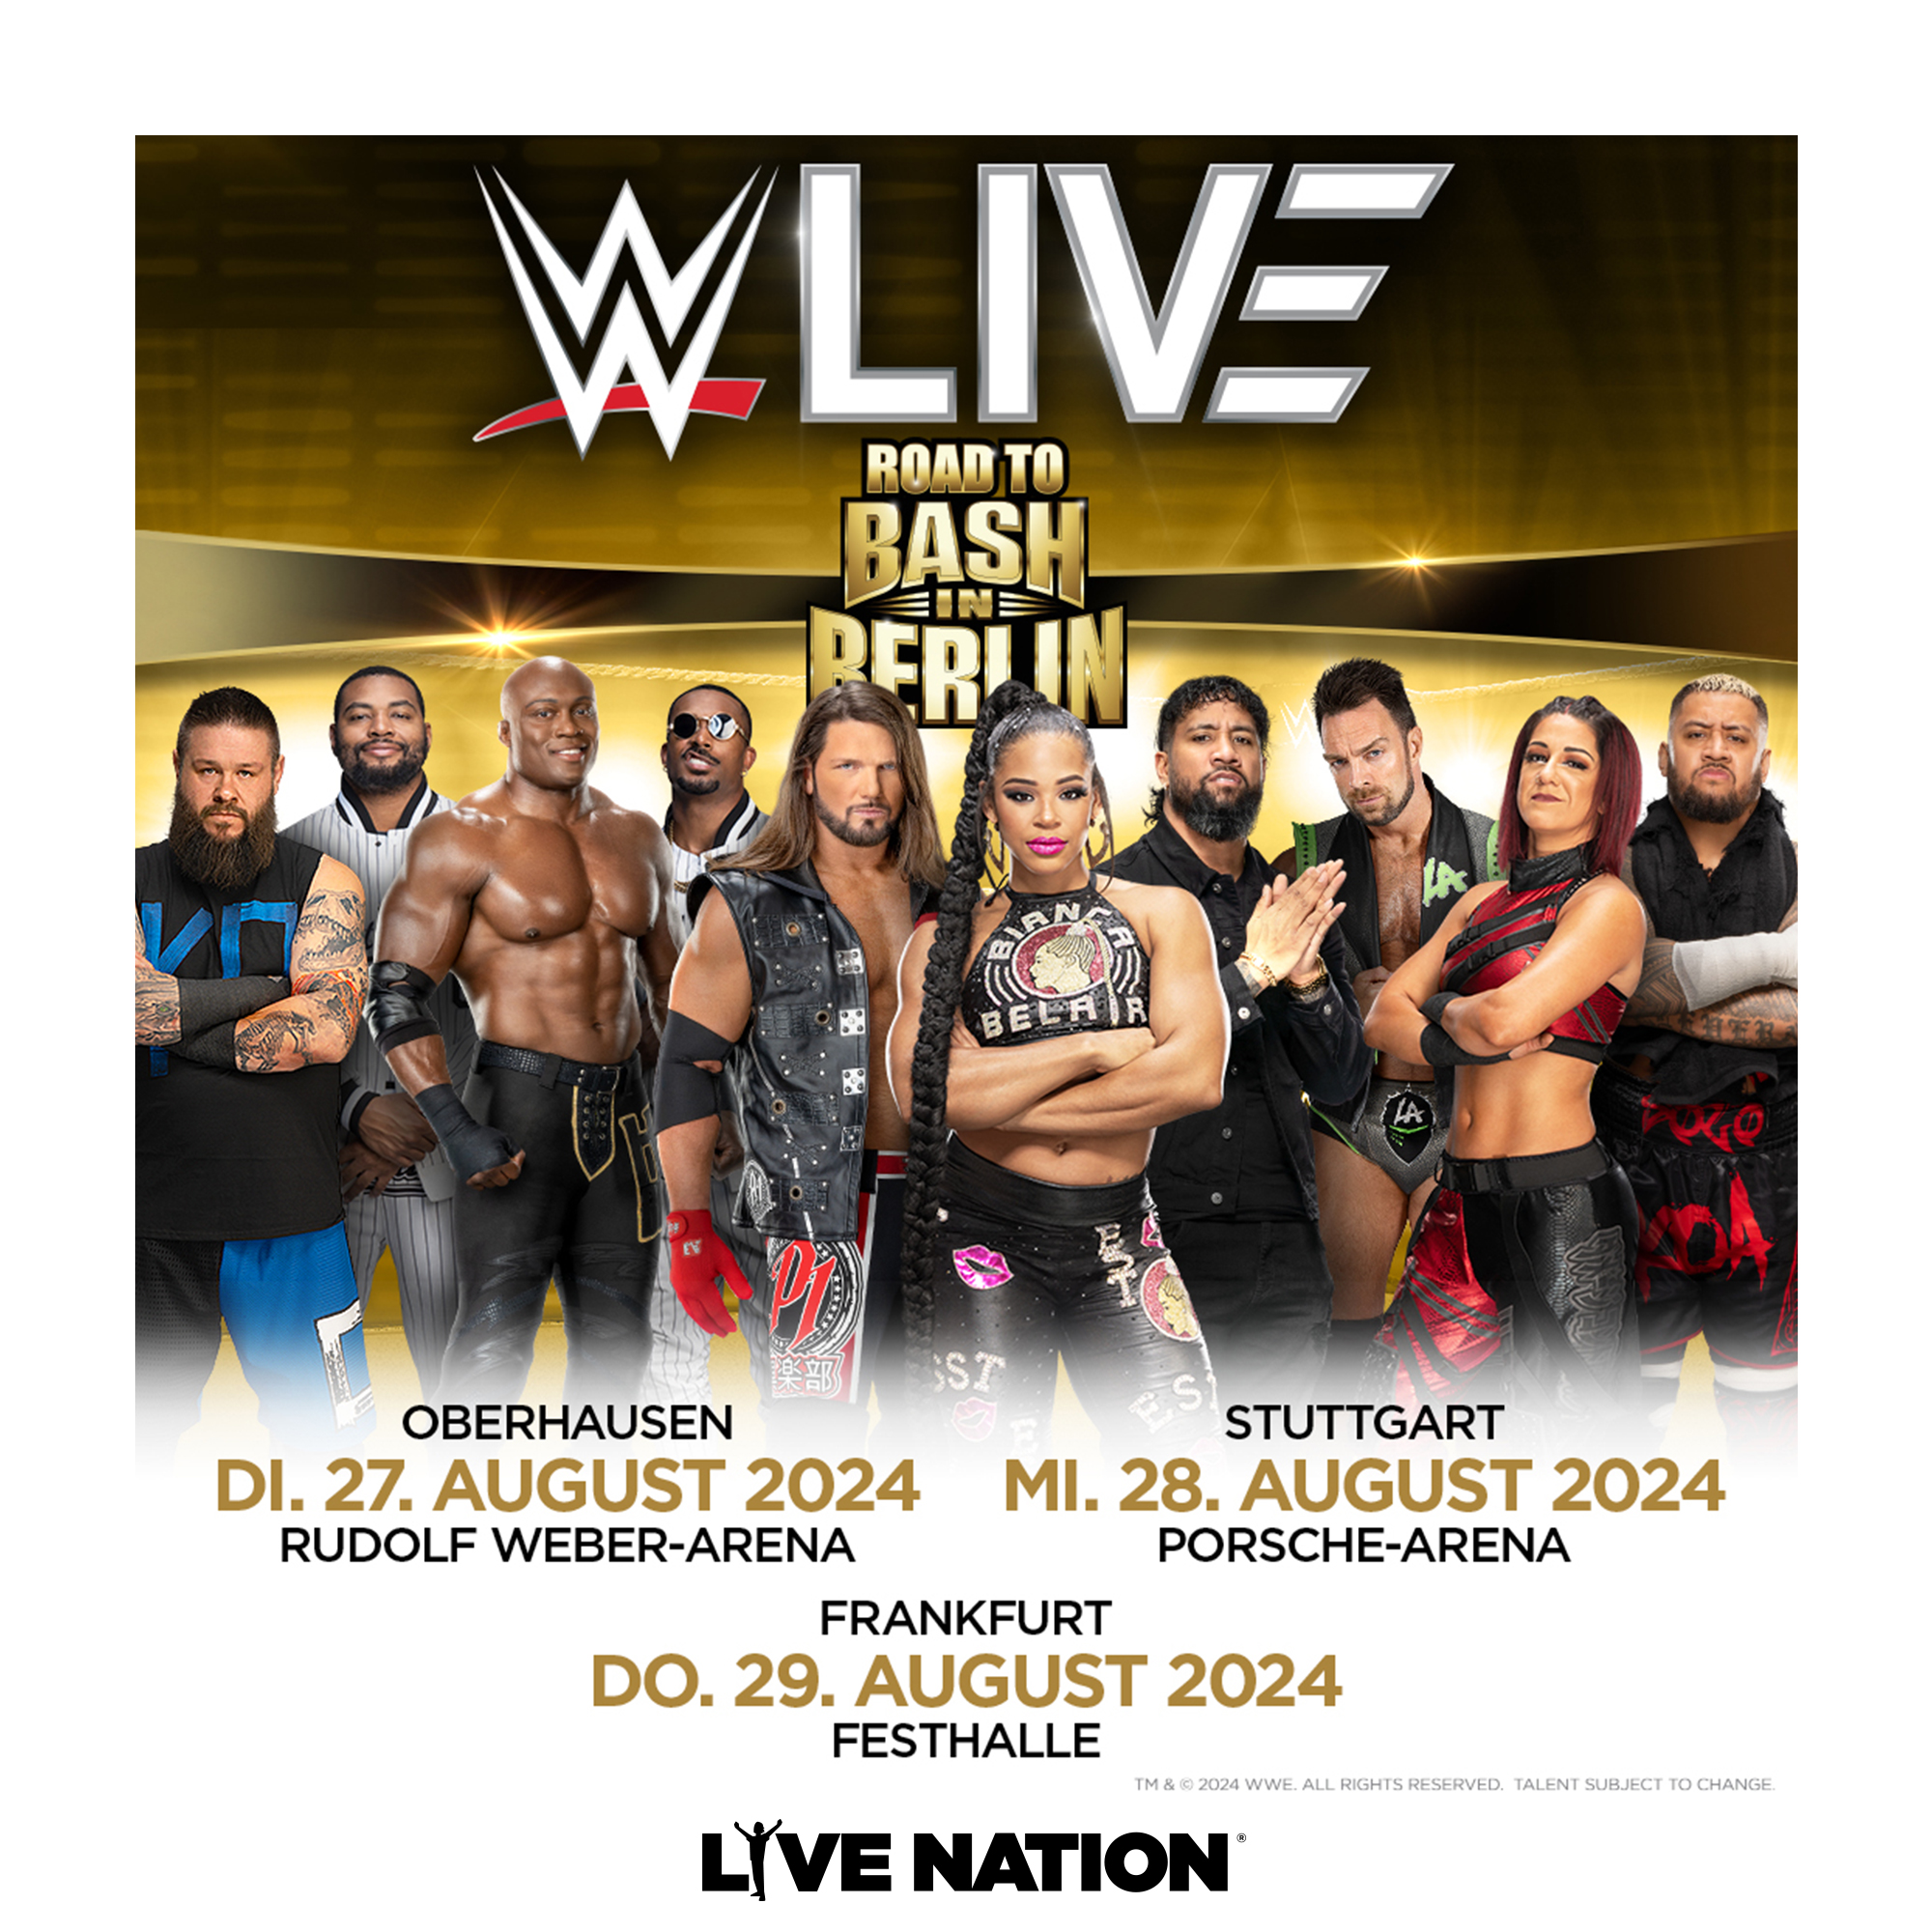 WWE at Porsche-Arena Tickets